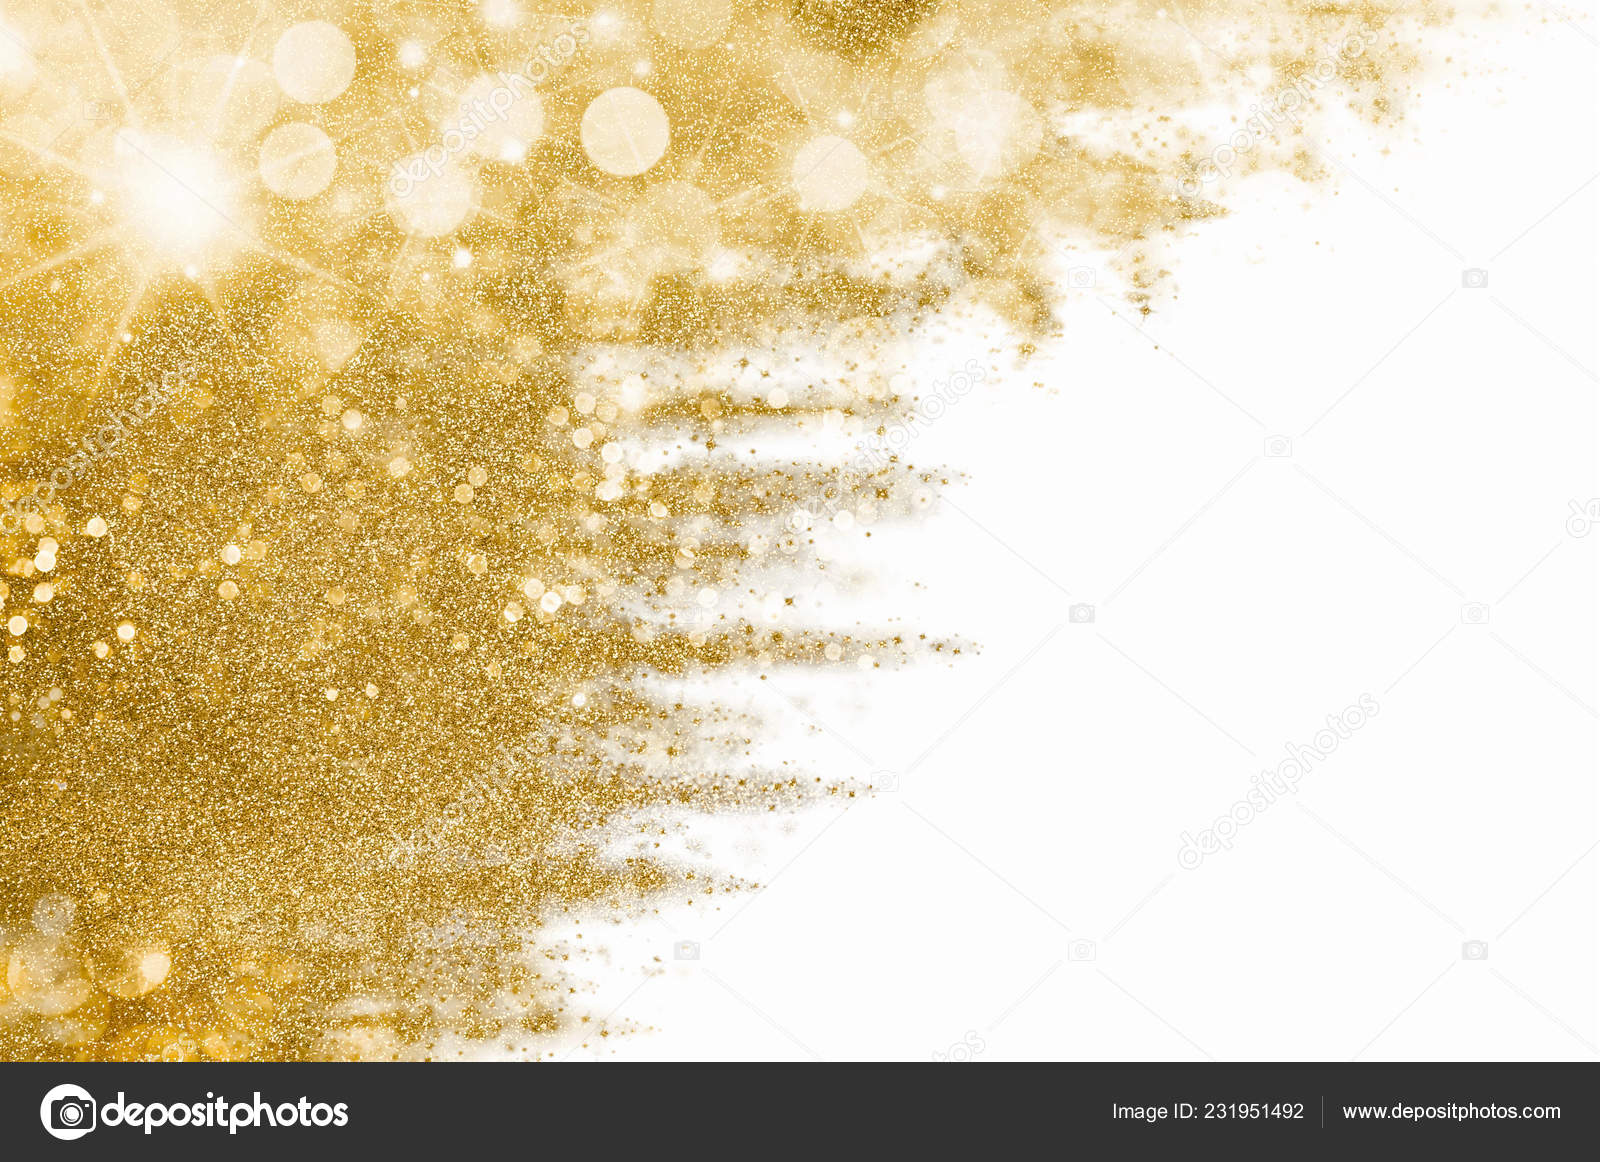 Bạn sẽ bị mê hoặc bởi những hình ảnh tuyệt vời về nền Giáng Sinh vàng lấp lánh, nhấp nháy những tia bokeh màu vàng nhũ. Tất cả đều tạo nên không gian lễ hội ấm áp và đầy hạnh phúc, chúc mừng một mùa Giáng Sinh đặc biệt.